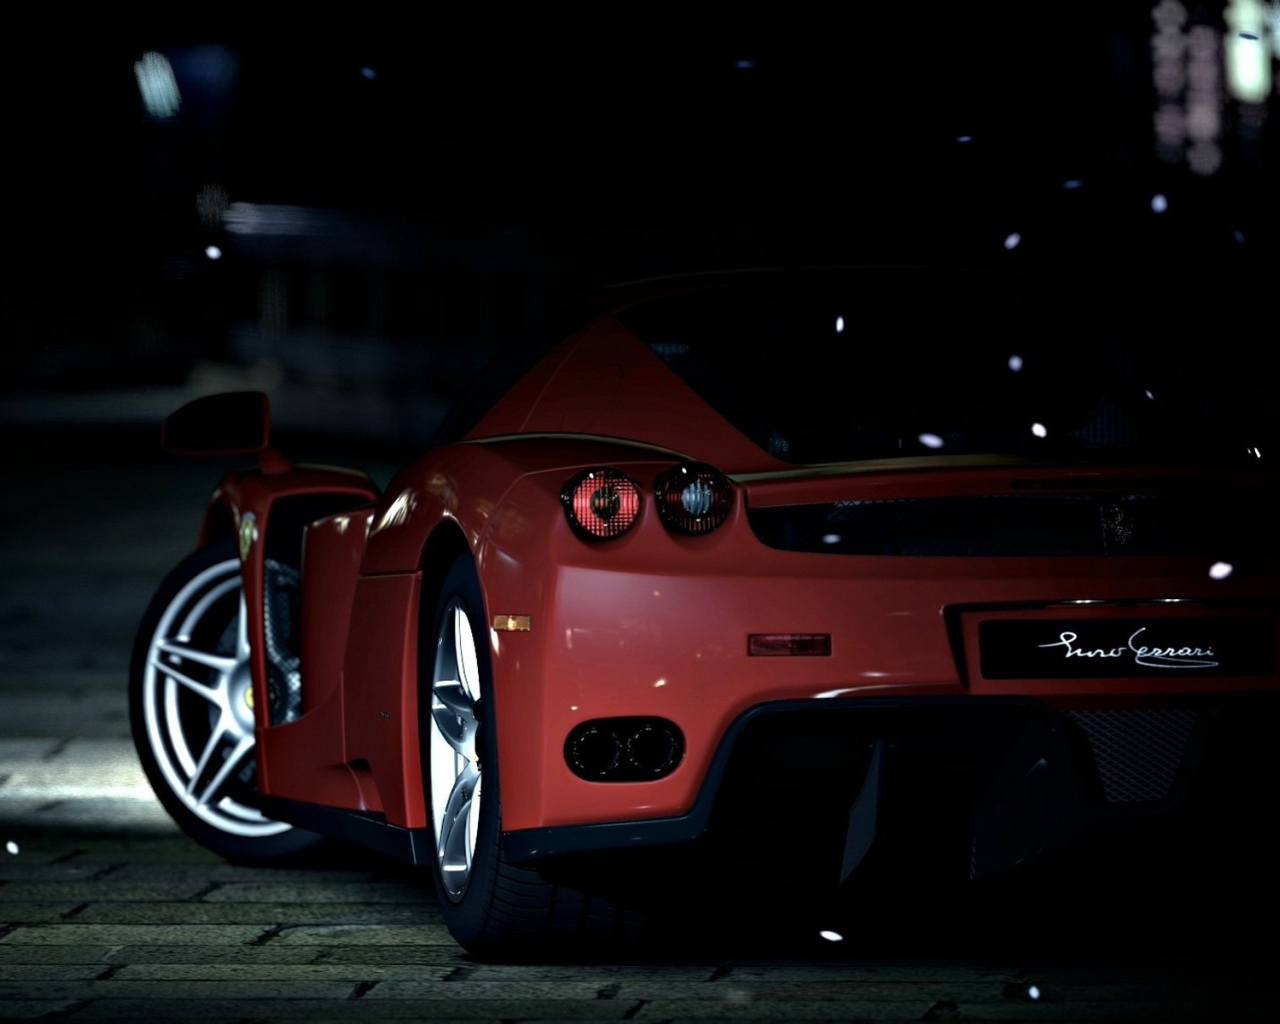 Красный спортивный автомобиль на темной улице